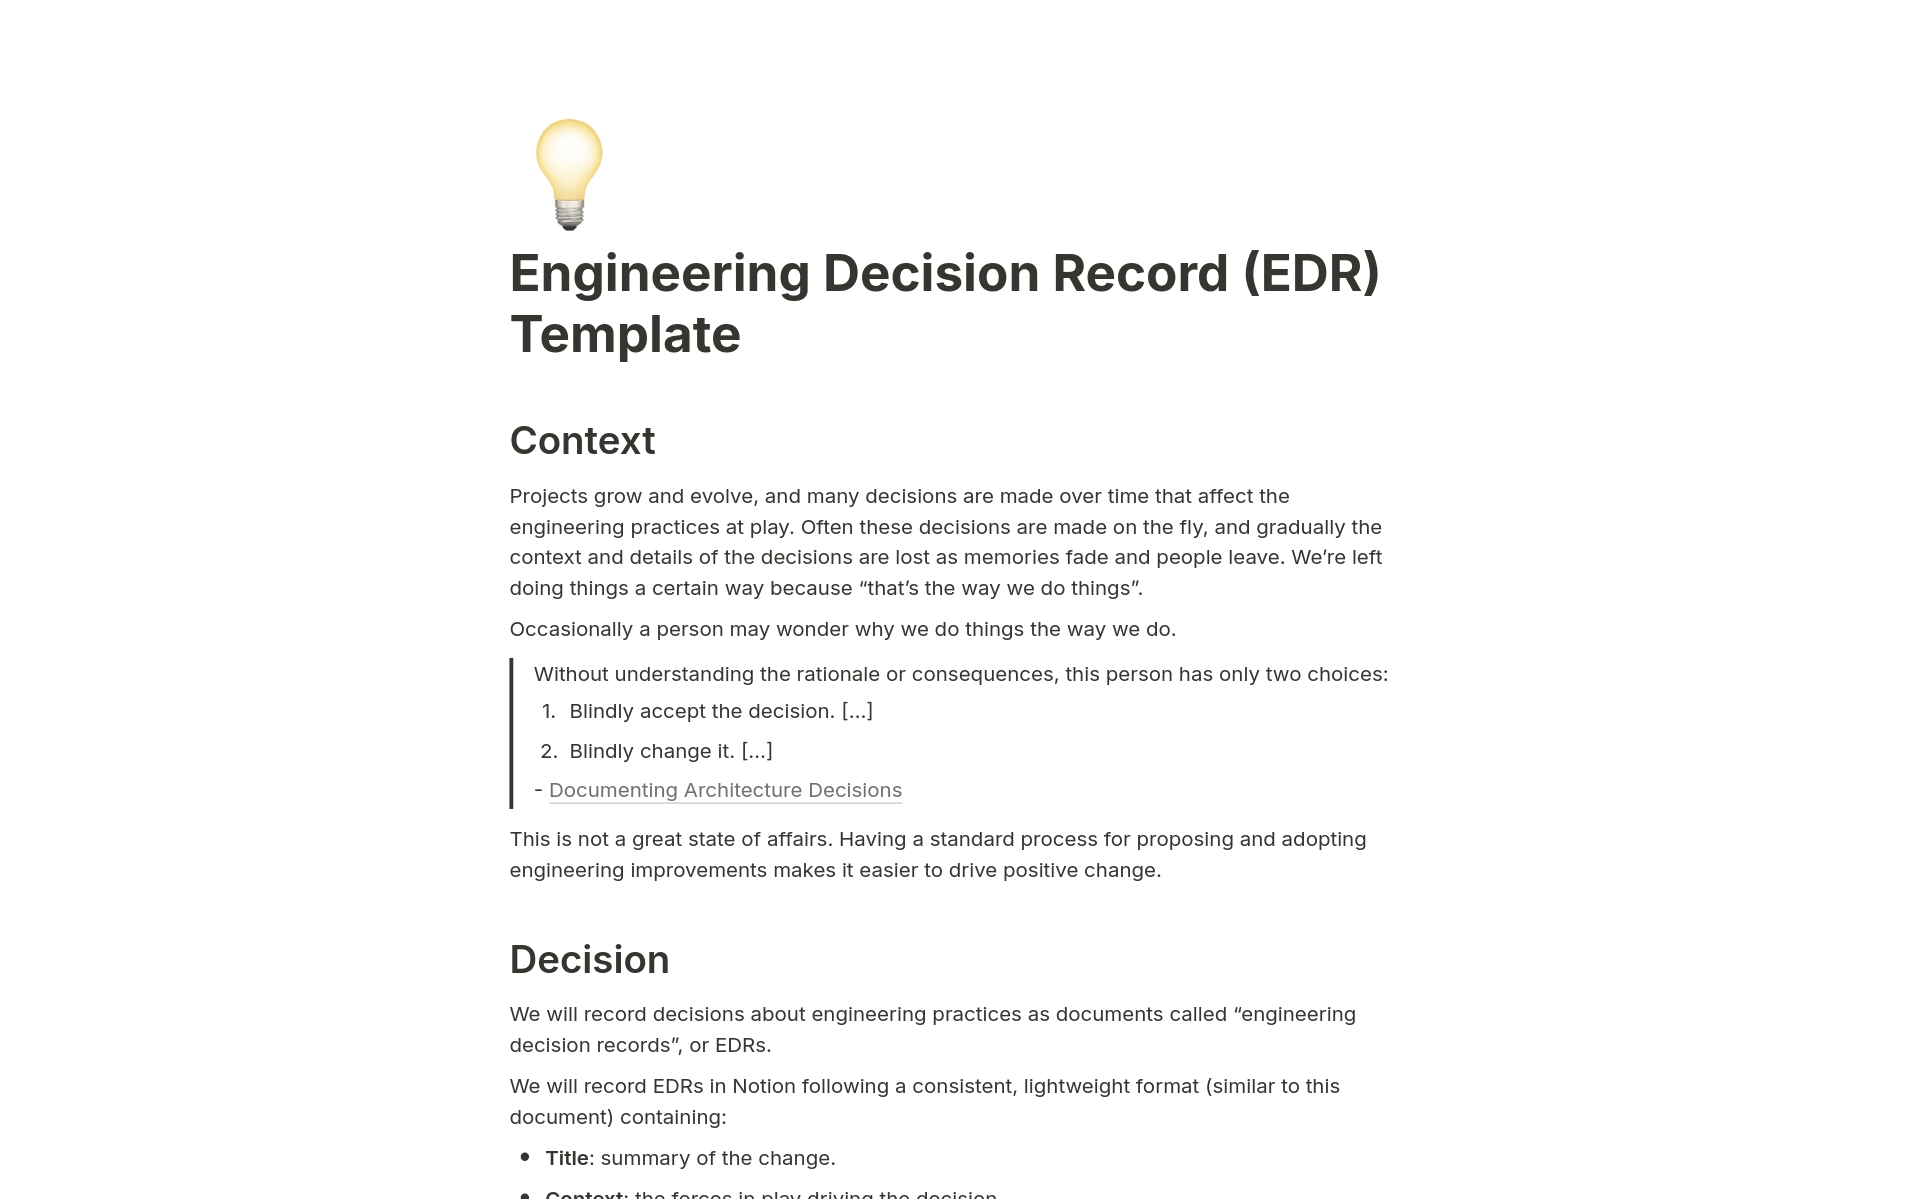 Vista previa de plantilla para Engineering Decision Record (EDR)